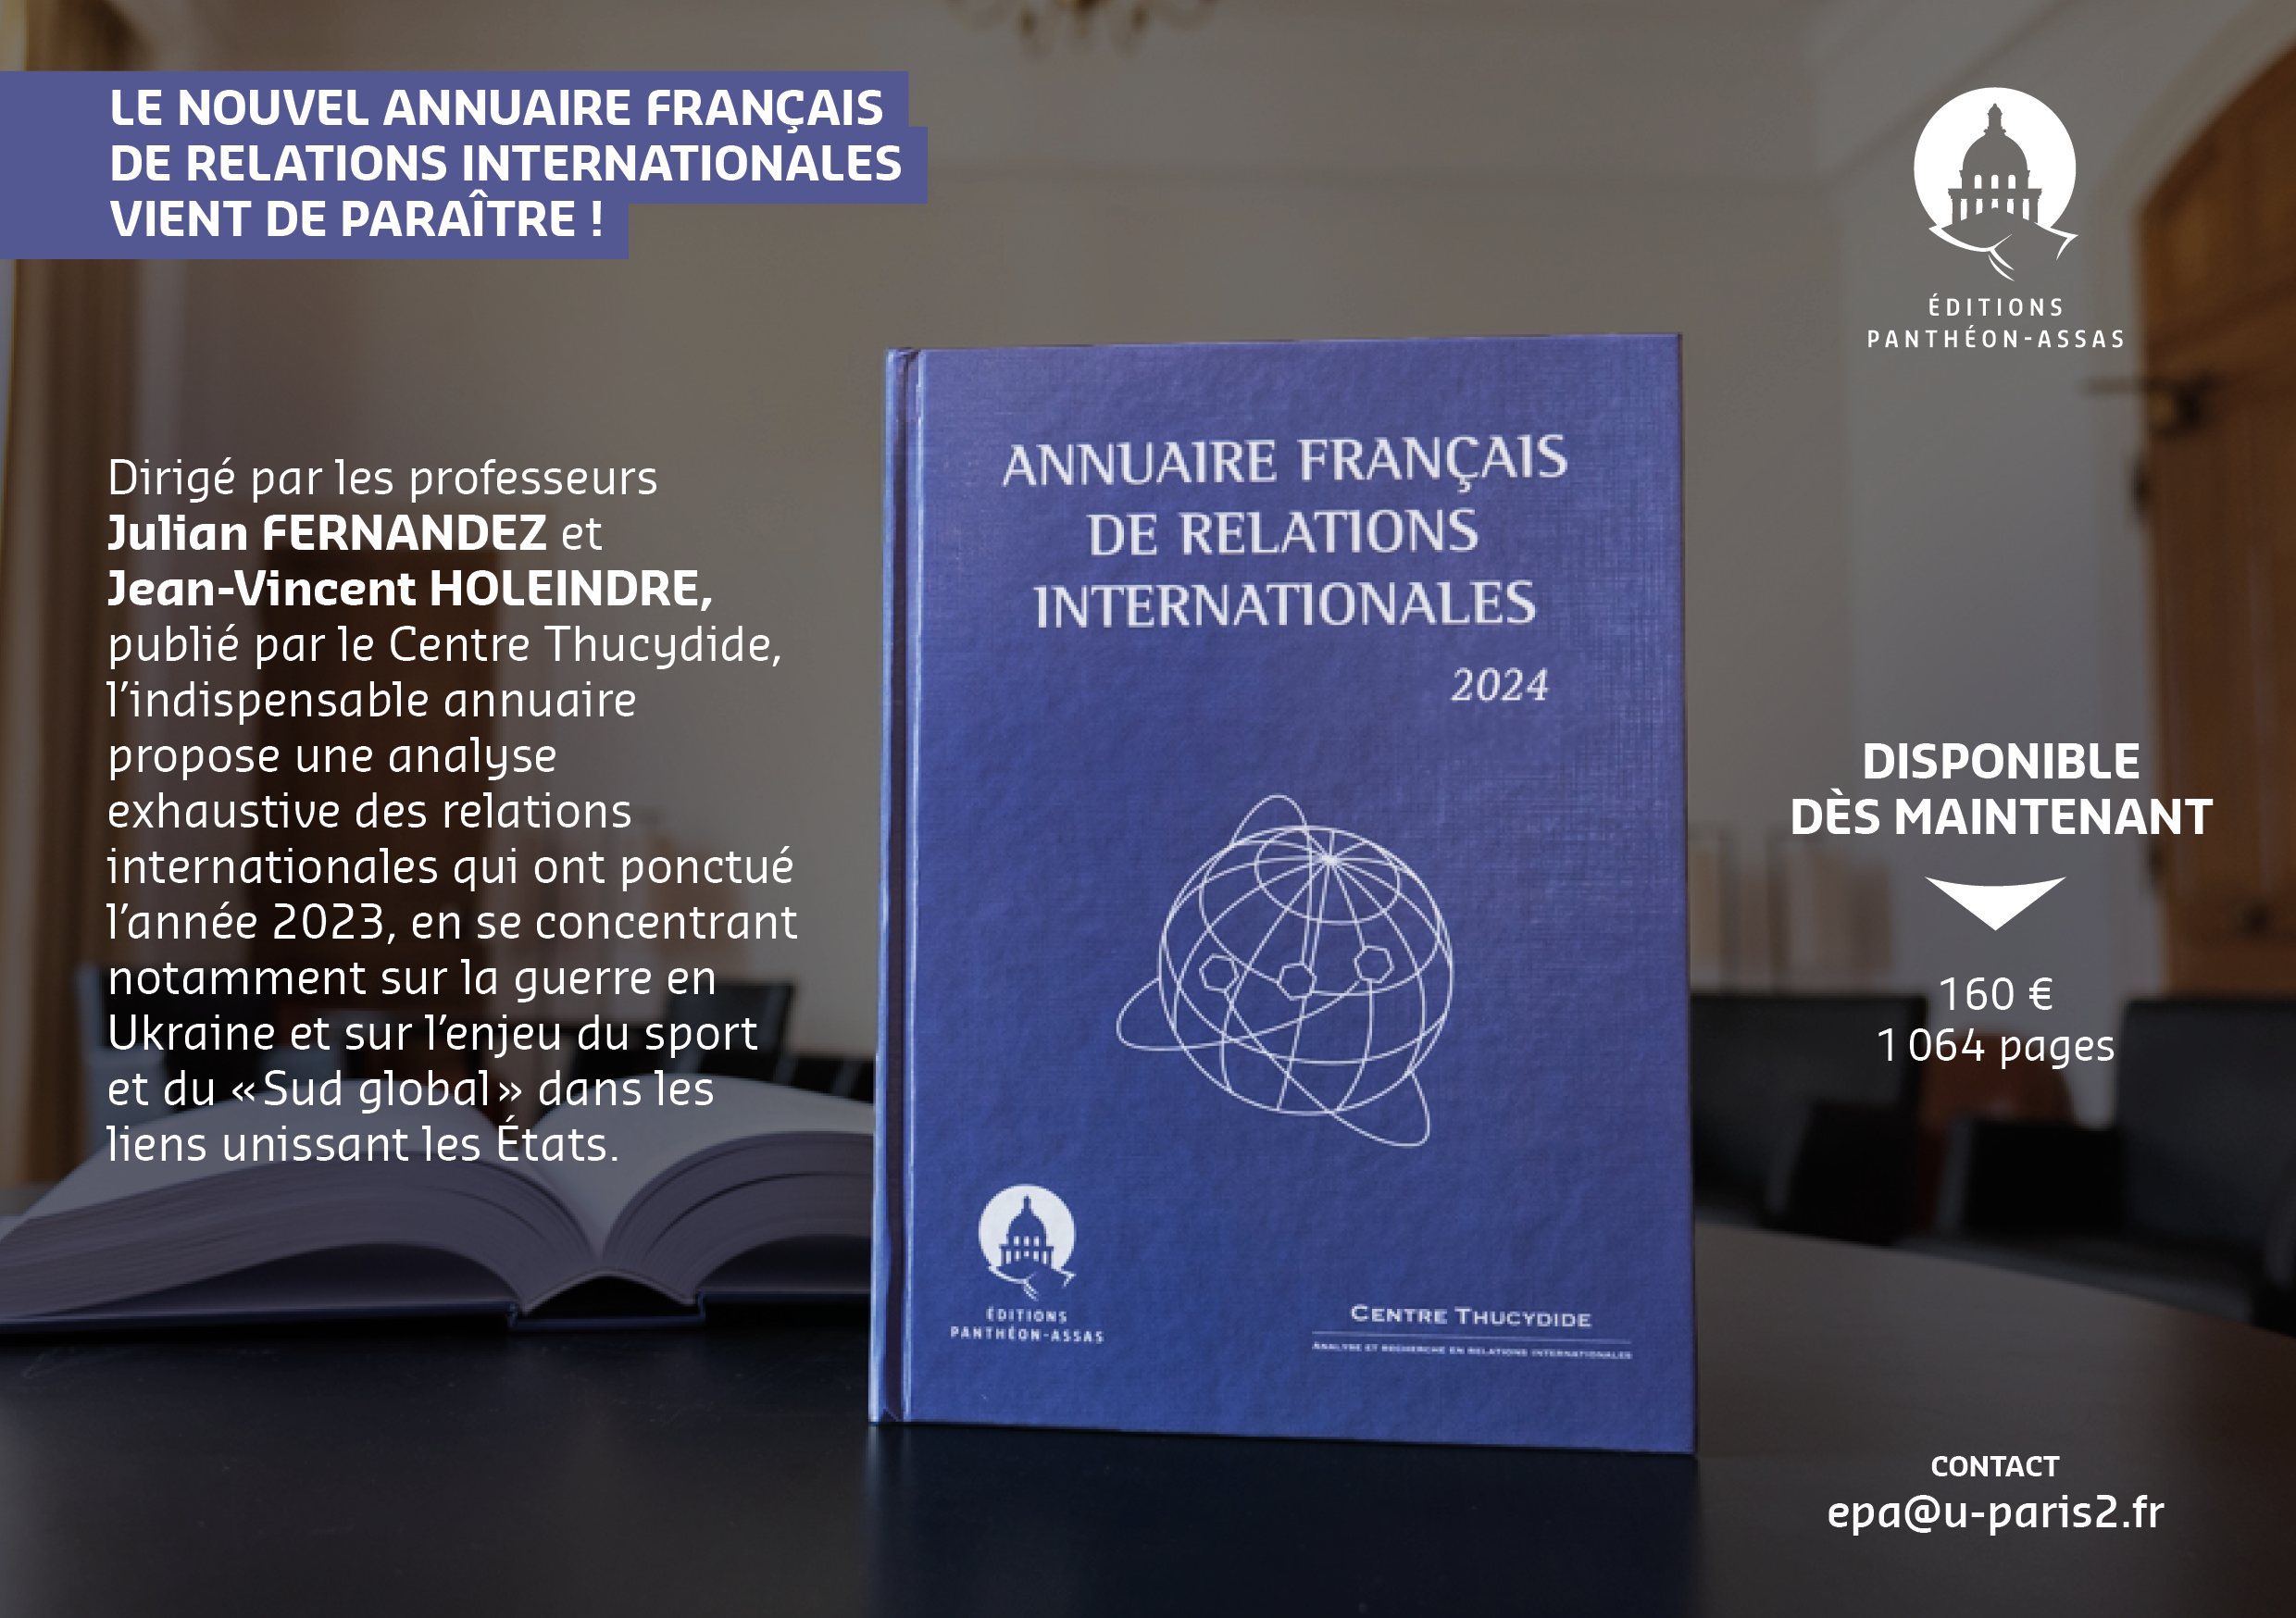 Flyer promotionnel de l'Annuaire français de relations internationales 2024 de Julian Fernandez et Jean-Vincent Holeindre du Centre Thucydide